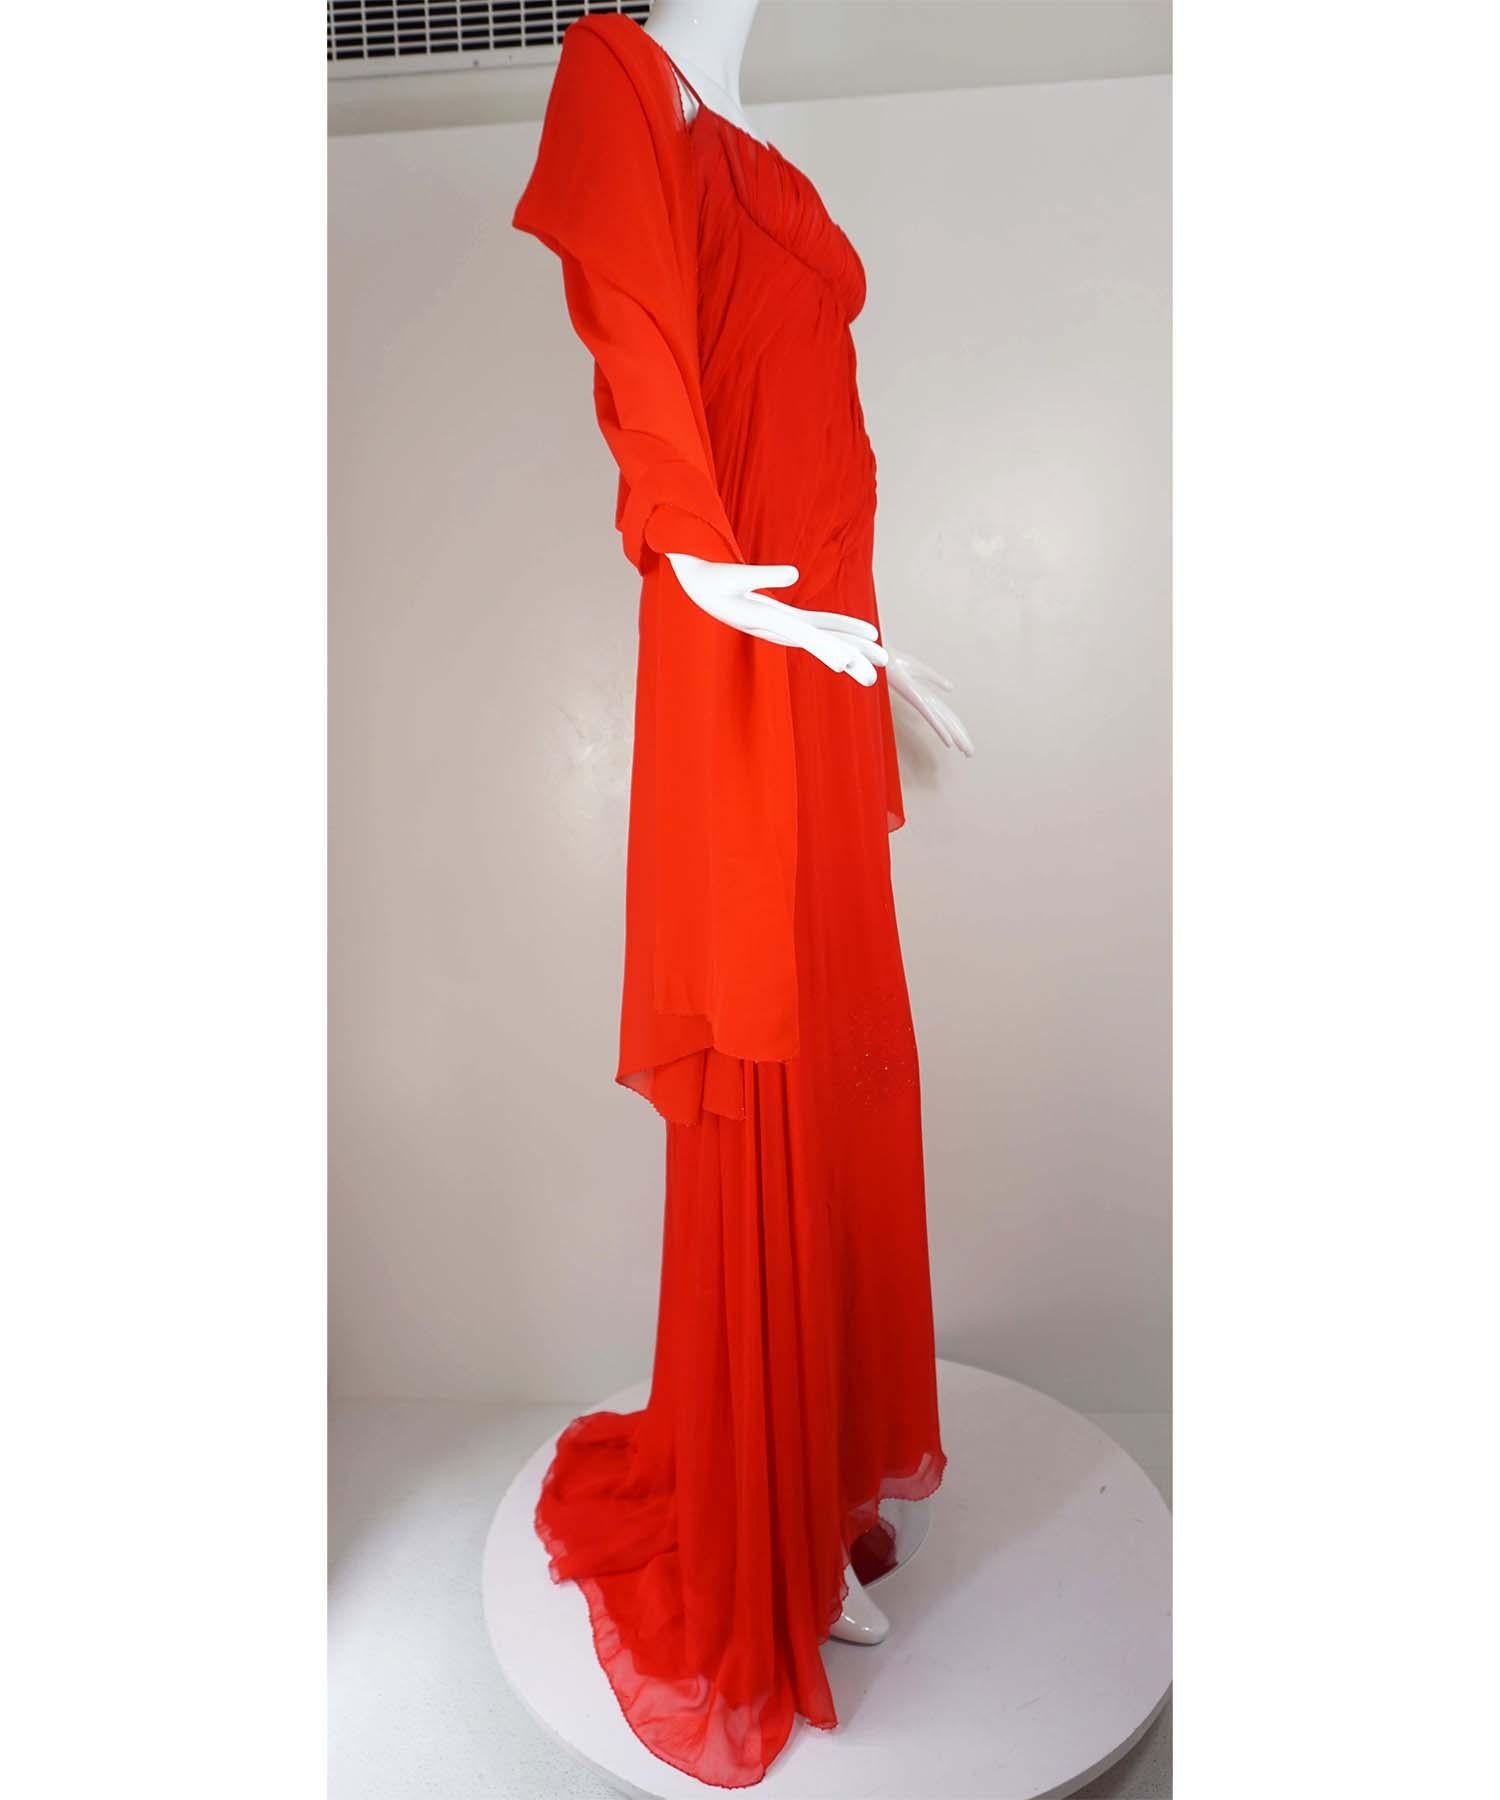 Das Kleid von Atelier Versace besteht aus rotem Seidenchiffon und einem passenden Perlenschal. Das maßgefertigte Kleid hat eine geraffte Brust und assymetrische Drapierungen mit Kristalldesigns und einen handgenähten Perlensaum über die drei